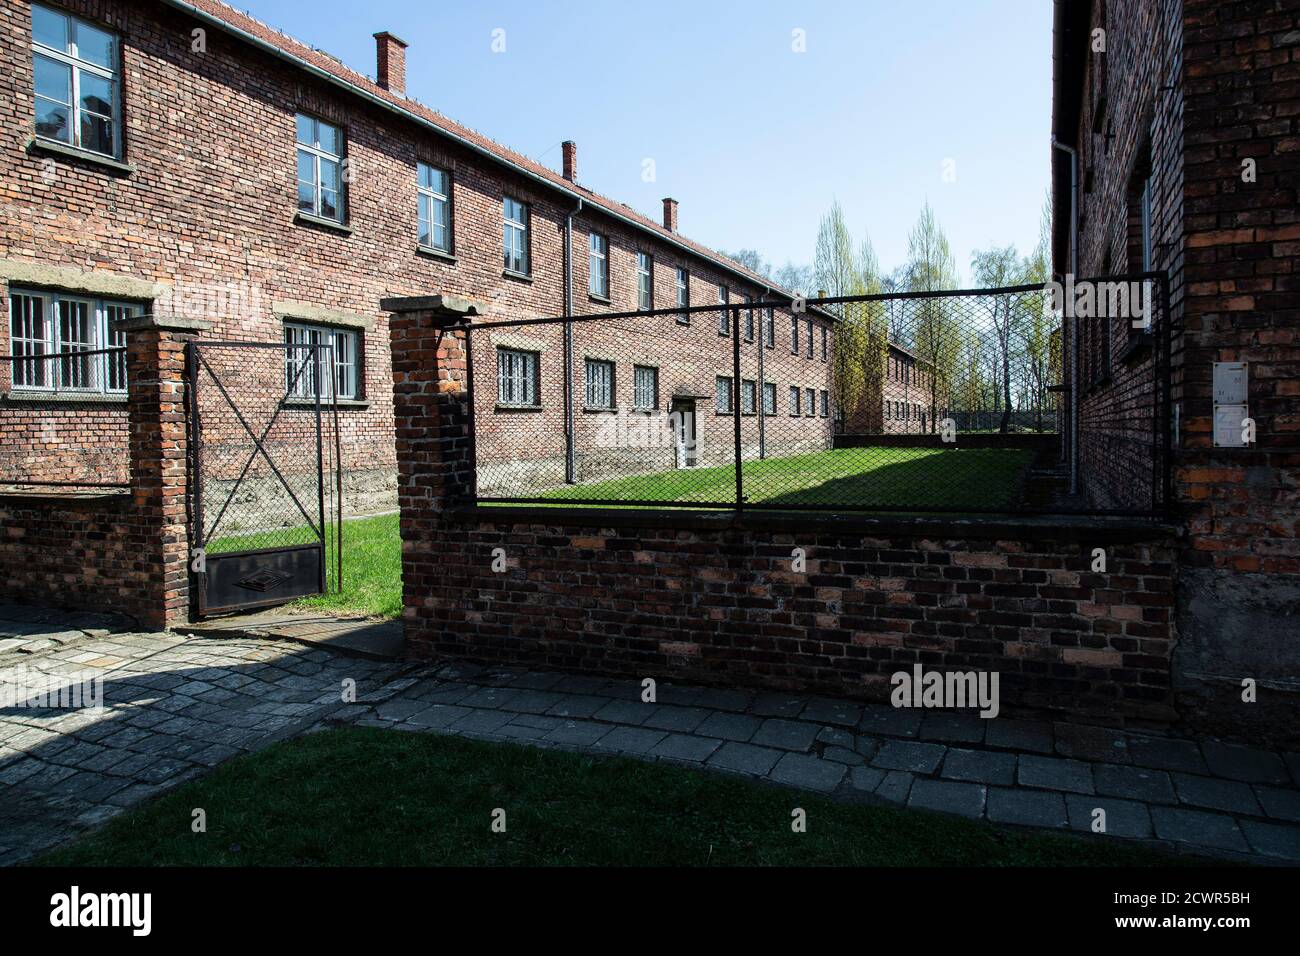 Vista esterna attraverso la recinzione della concentrazione di Auschwitz Birkenau campo in Polonia un ricordo duraturo delle atrocità di guerra naziste Durante la seconda guerra mondiale Foto Stock